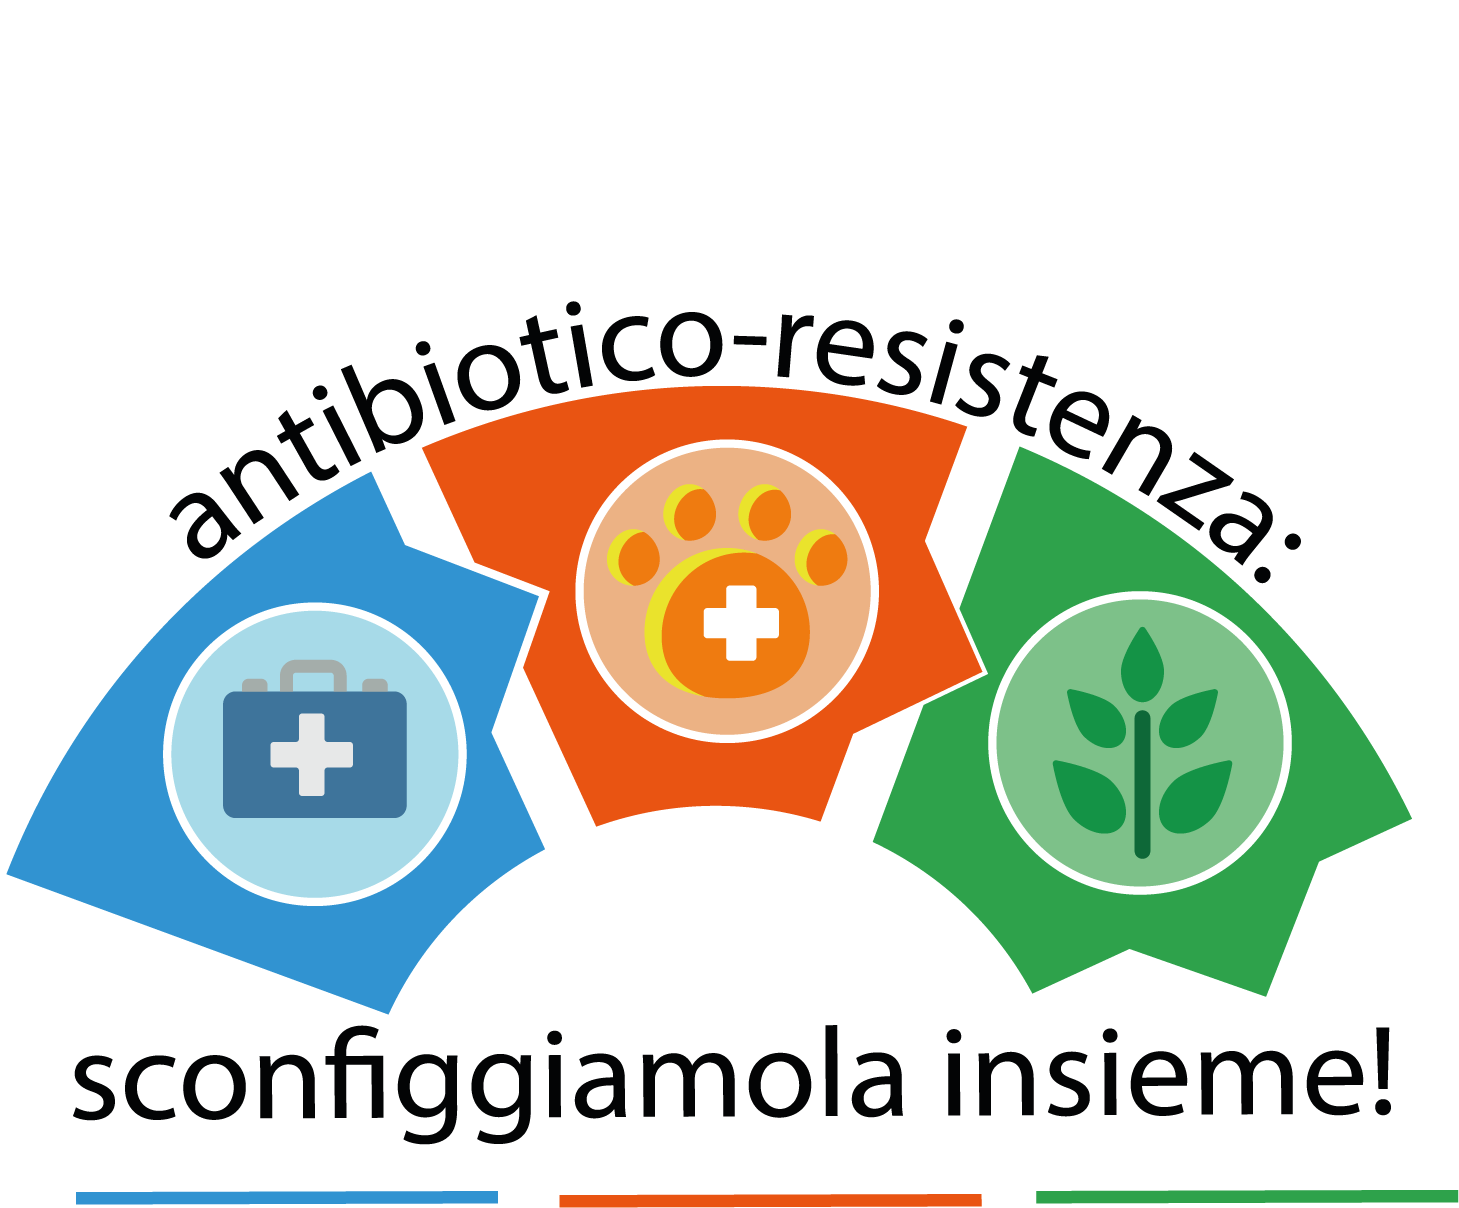 convegno antimicrobico-resistenza, Firenze 6-7 giugno 2019